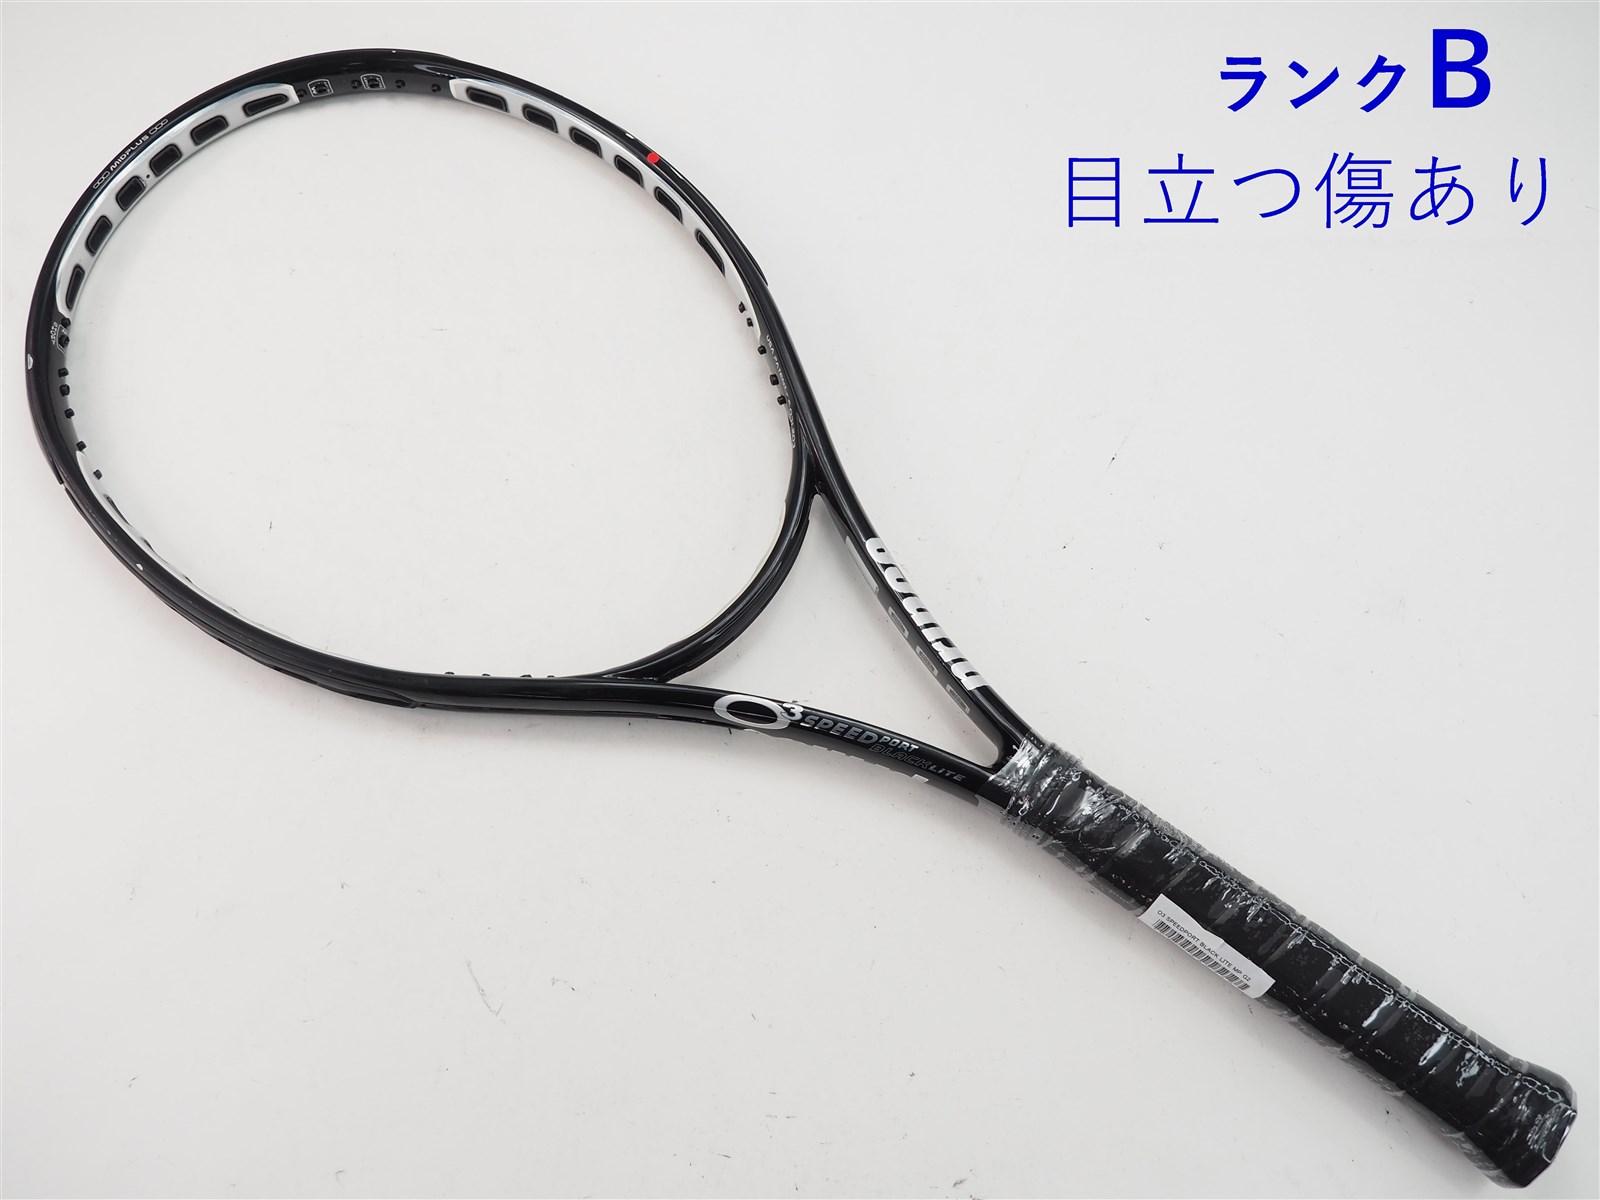 100平方インチ長さテニスラケット プリンス オースリー スピードポート ブラック ライト MP (G2)PRINCE O3 SPEEDPORT BLACK LITE MP